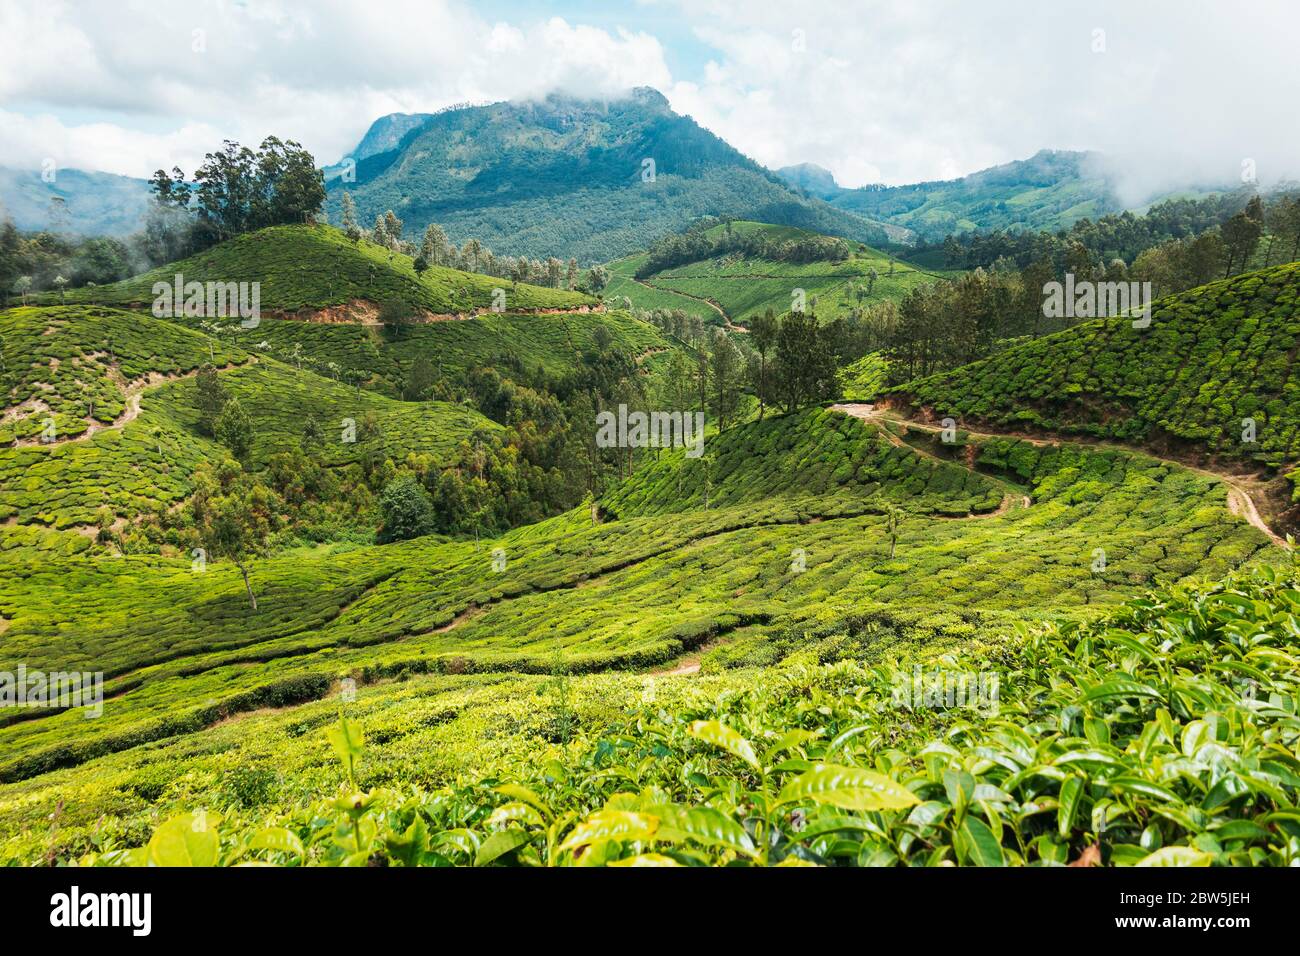 Des chemins et des routes de terre sillent les plantations de thé à flanc de colline à Munnar, en Inde Banque D'Images